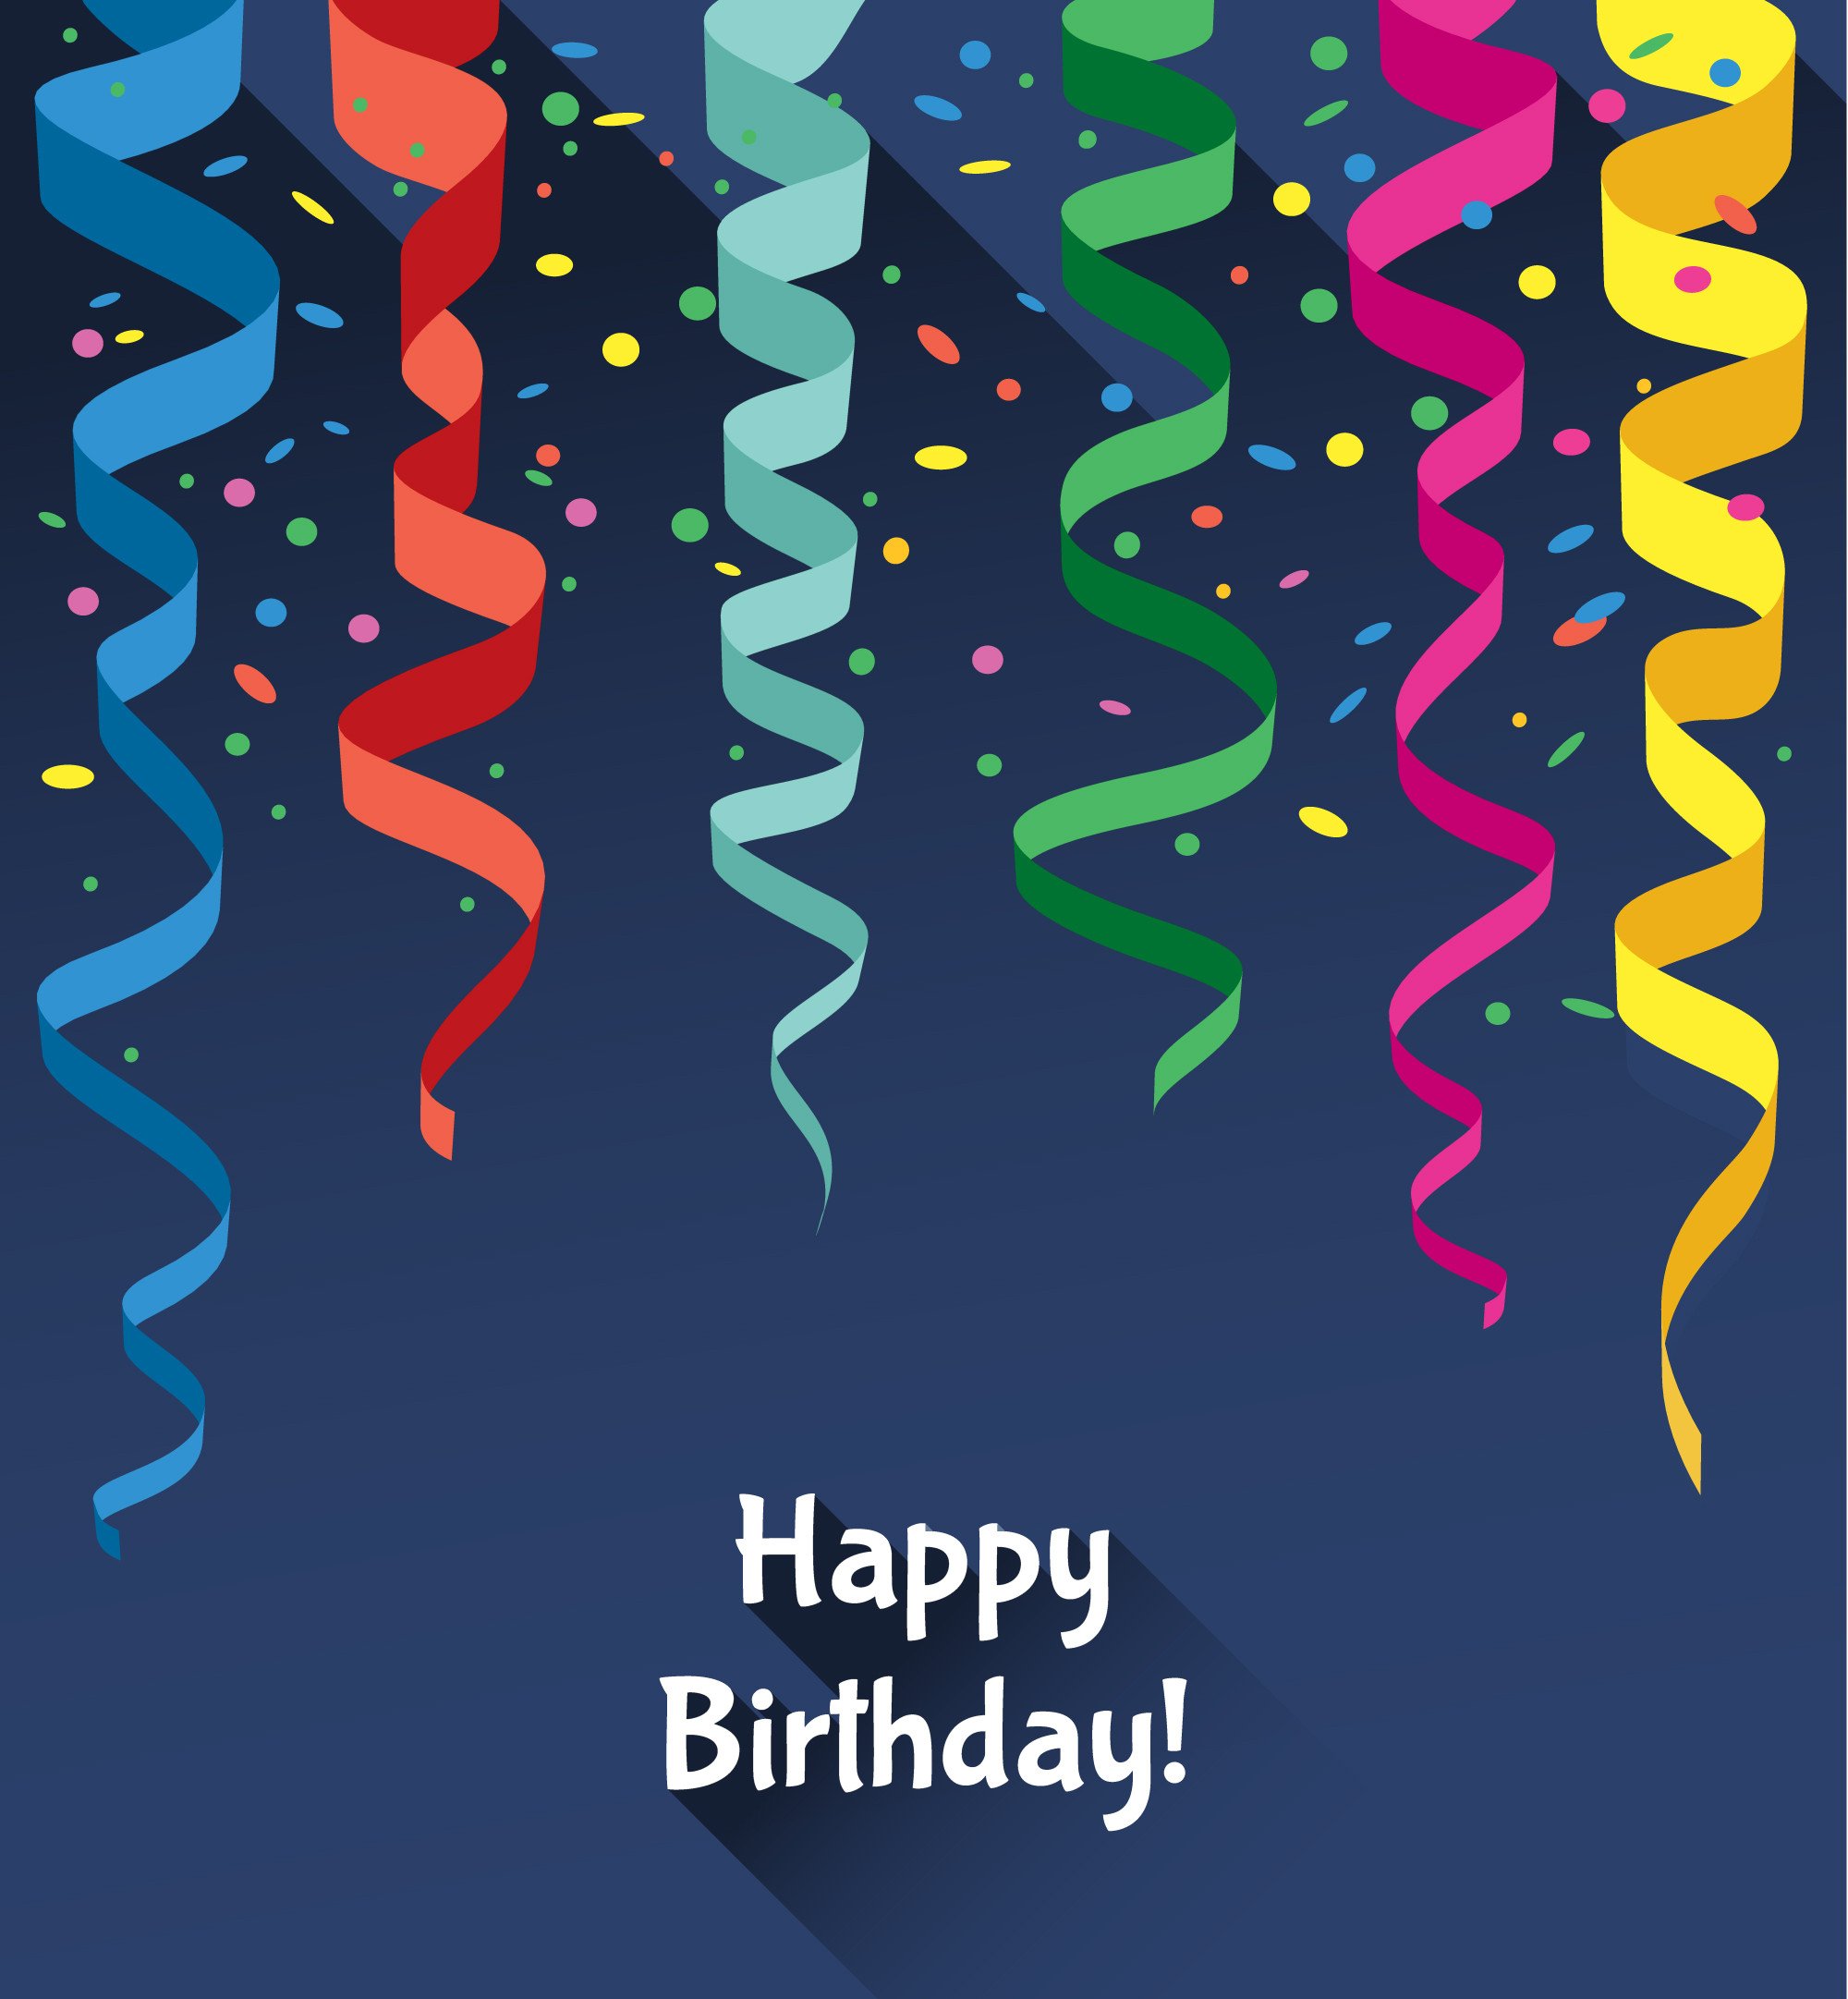 Happy Birthday card shop Vectors